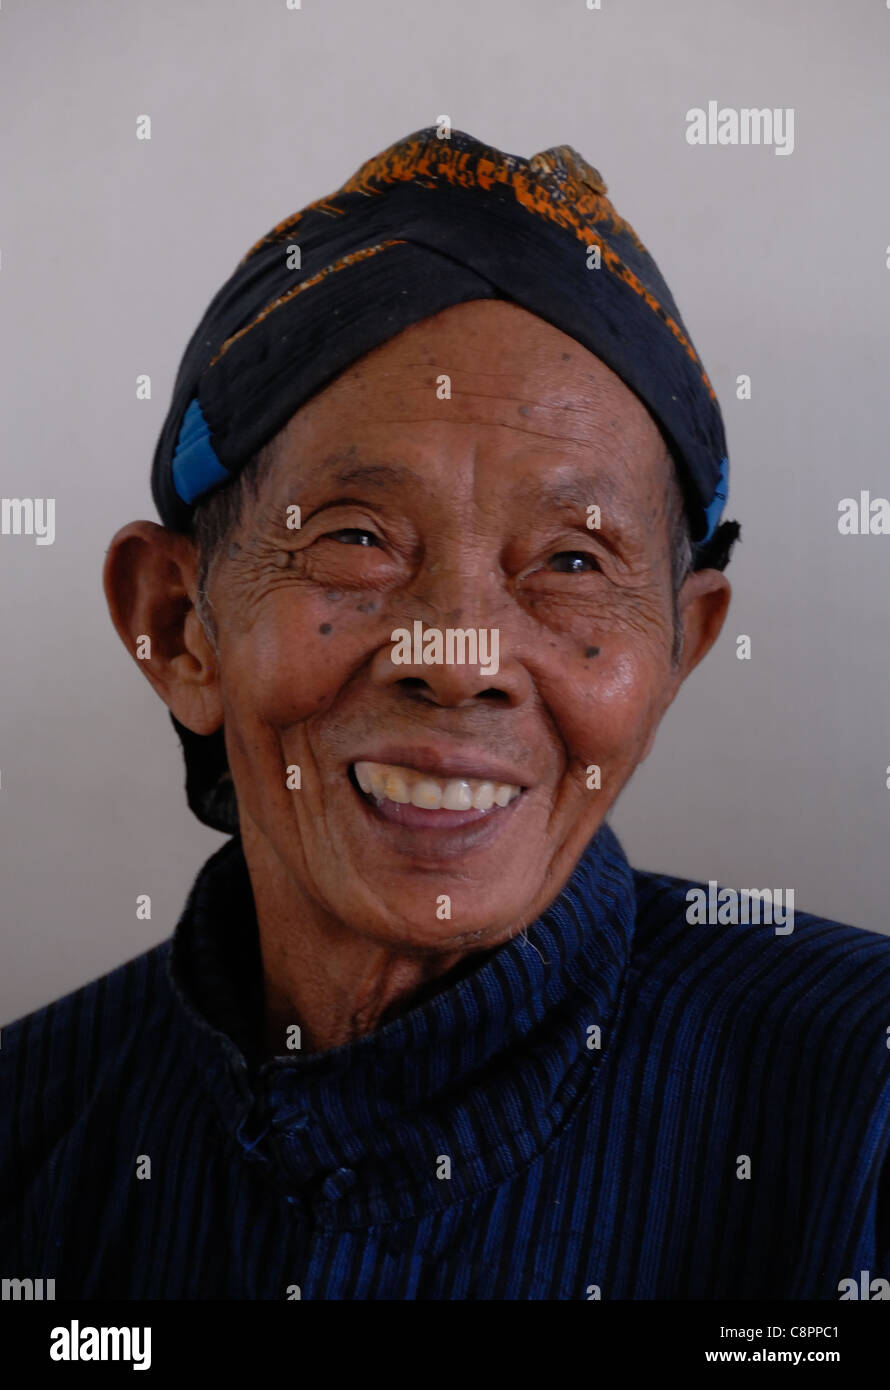 Porträt eines der Sultan von Yogjakartas Männer. Lächelnd und erschossen vor einem grauen Hintergrund.  Ein Distinguishedold Herr. Stockfoto